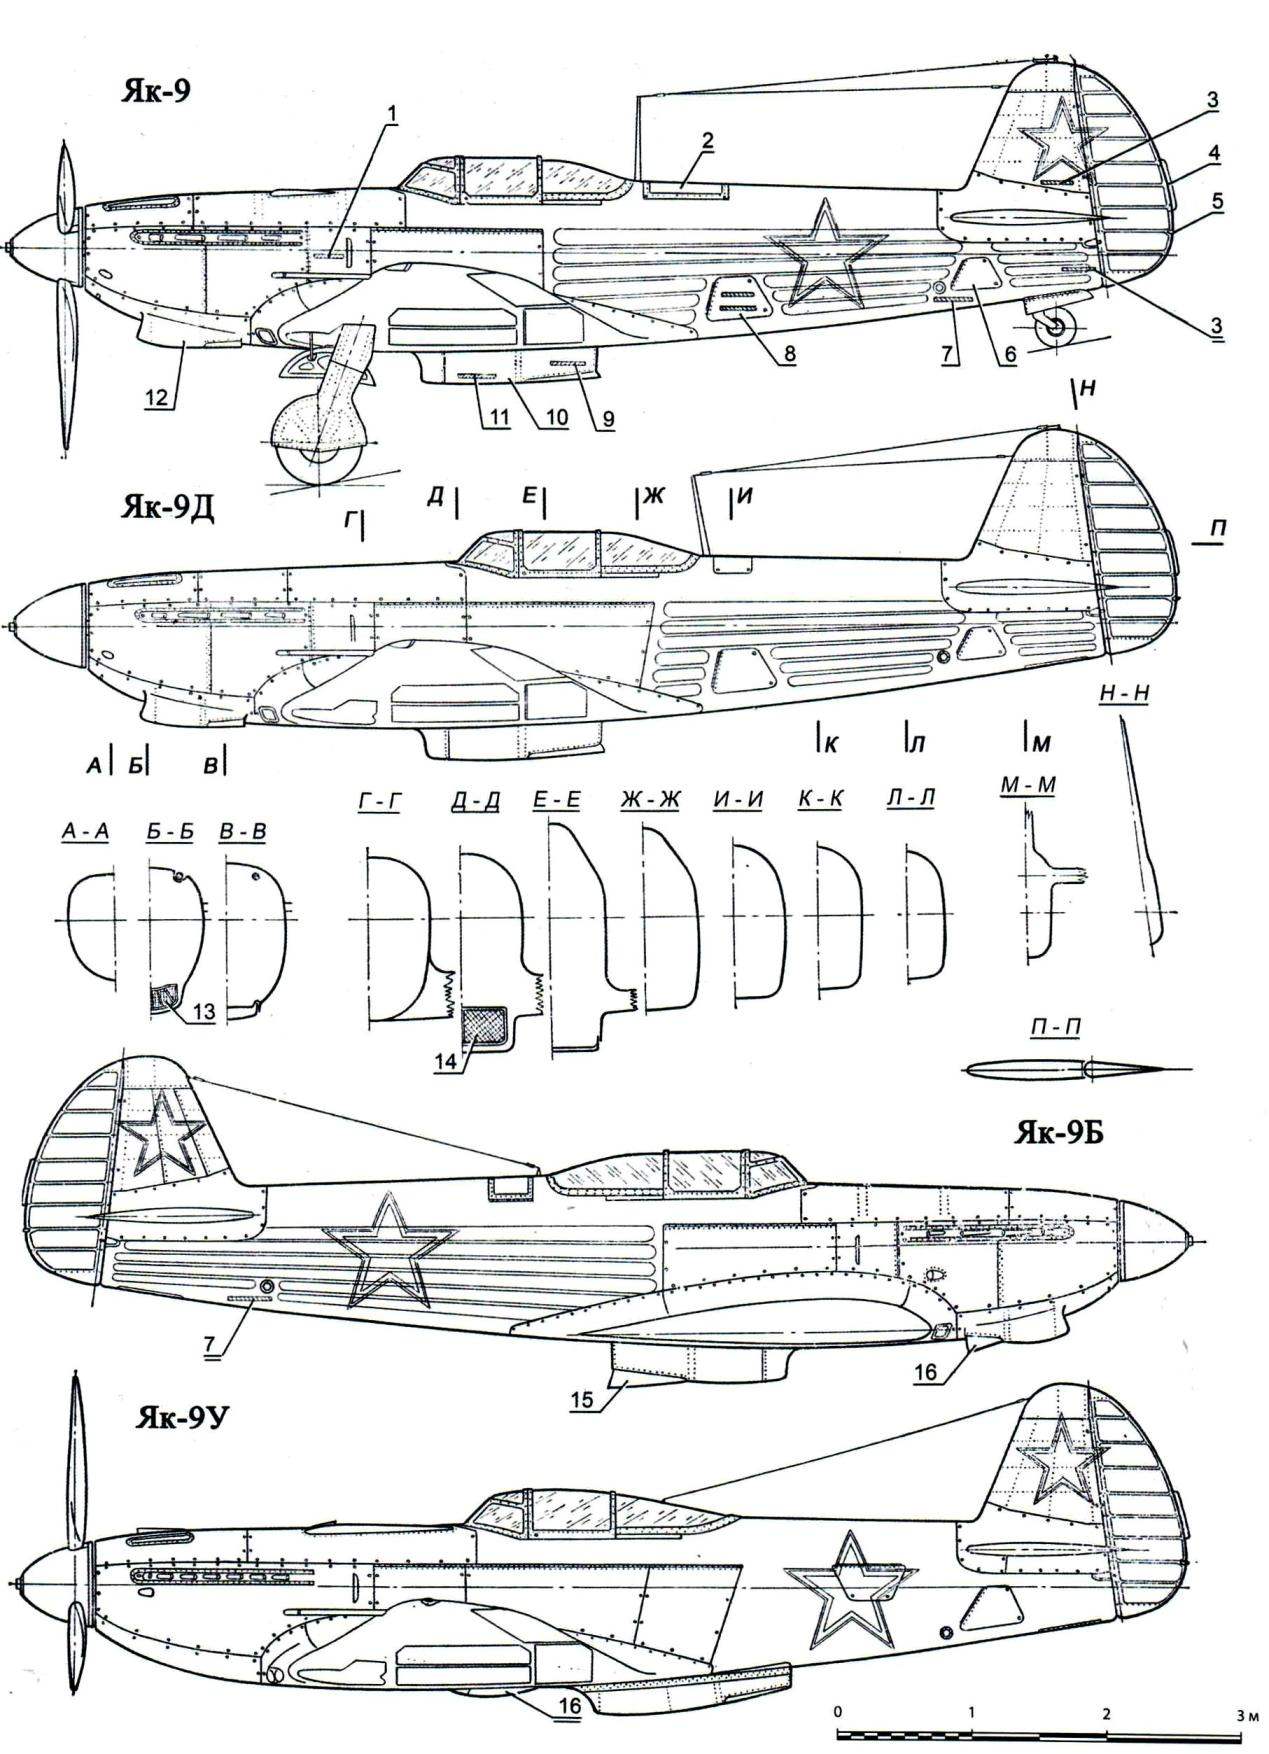 Yak-9